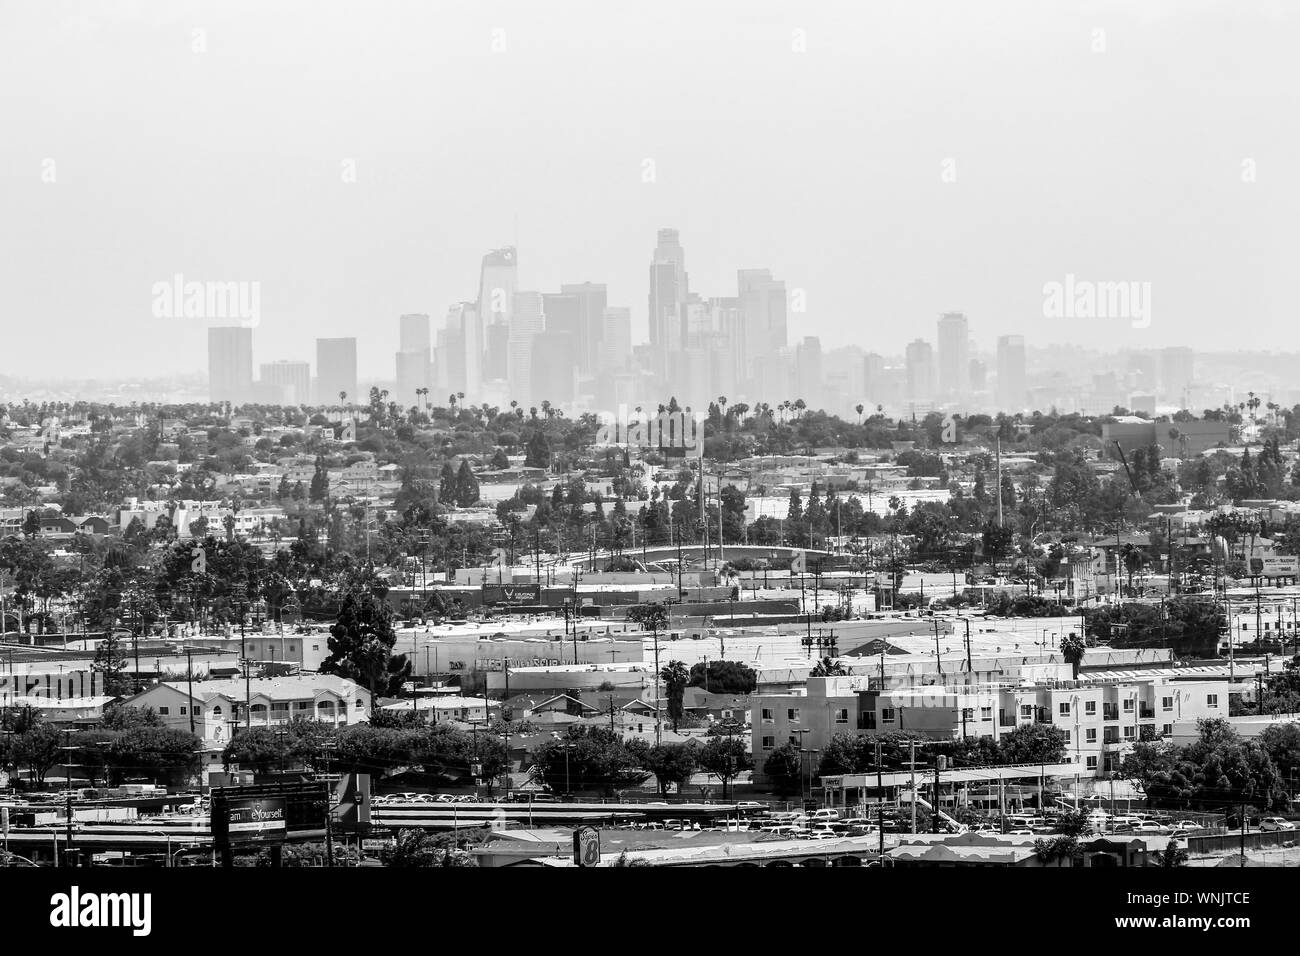 Los Angeles, Californie, USA - Le 22 mai 2019 : le comté de Los Angeles en monochrome avec l'suburs en premier plan et le centre-ville de L.A. en arrière-plan. Banque D'Images